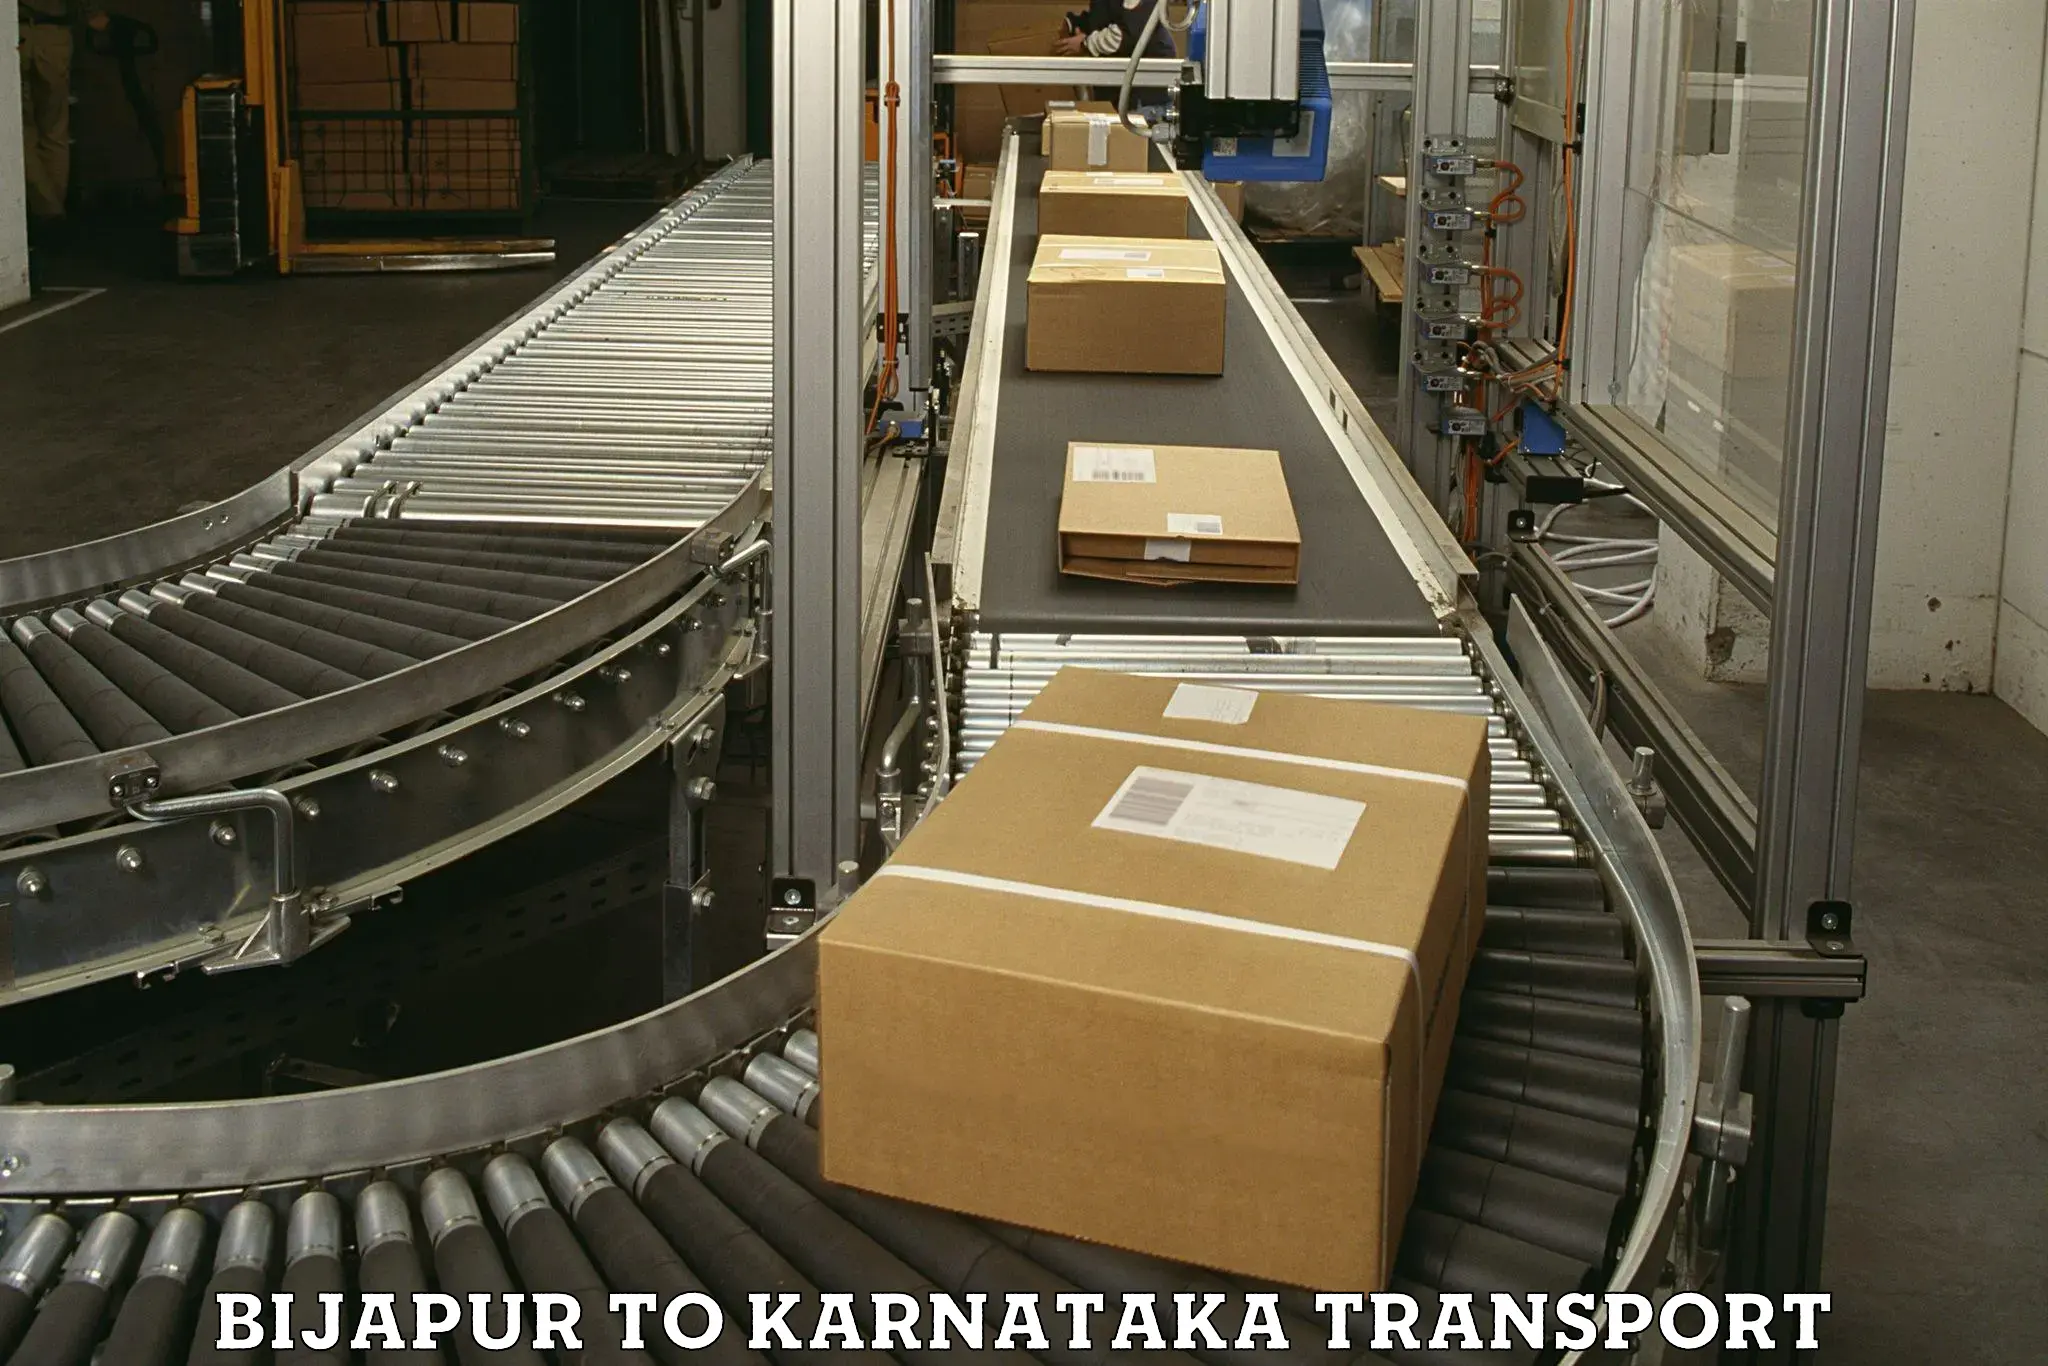 Furniture transport service Bijapur to Mahalingpur